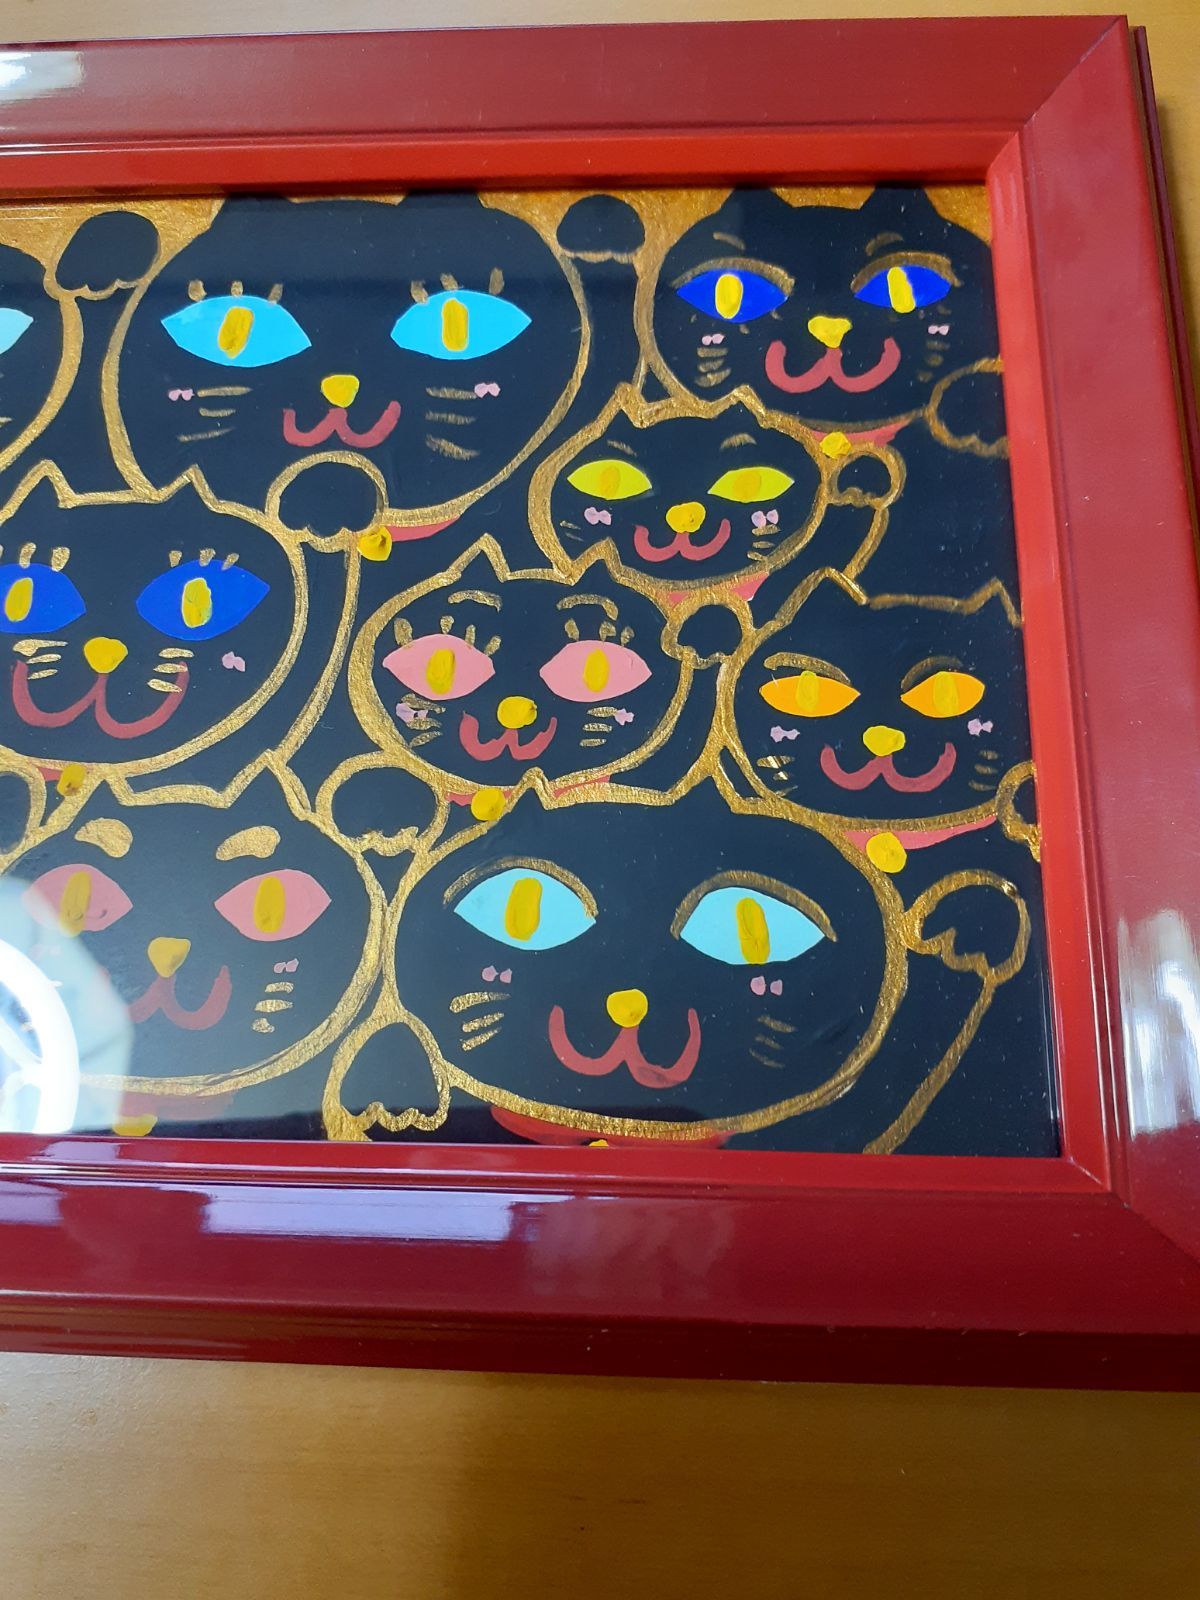 ハッピー黒の招き猫 赤い額付き 21×16cm幅2cm 小楠アキコ作品